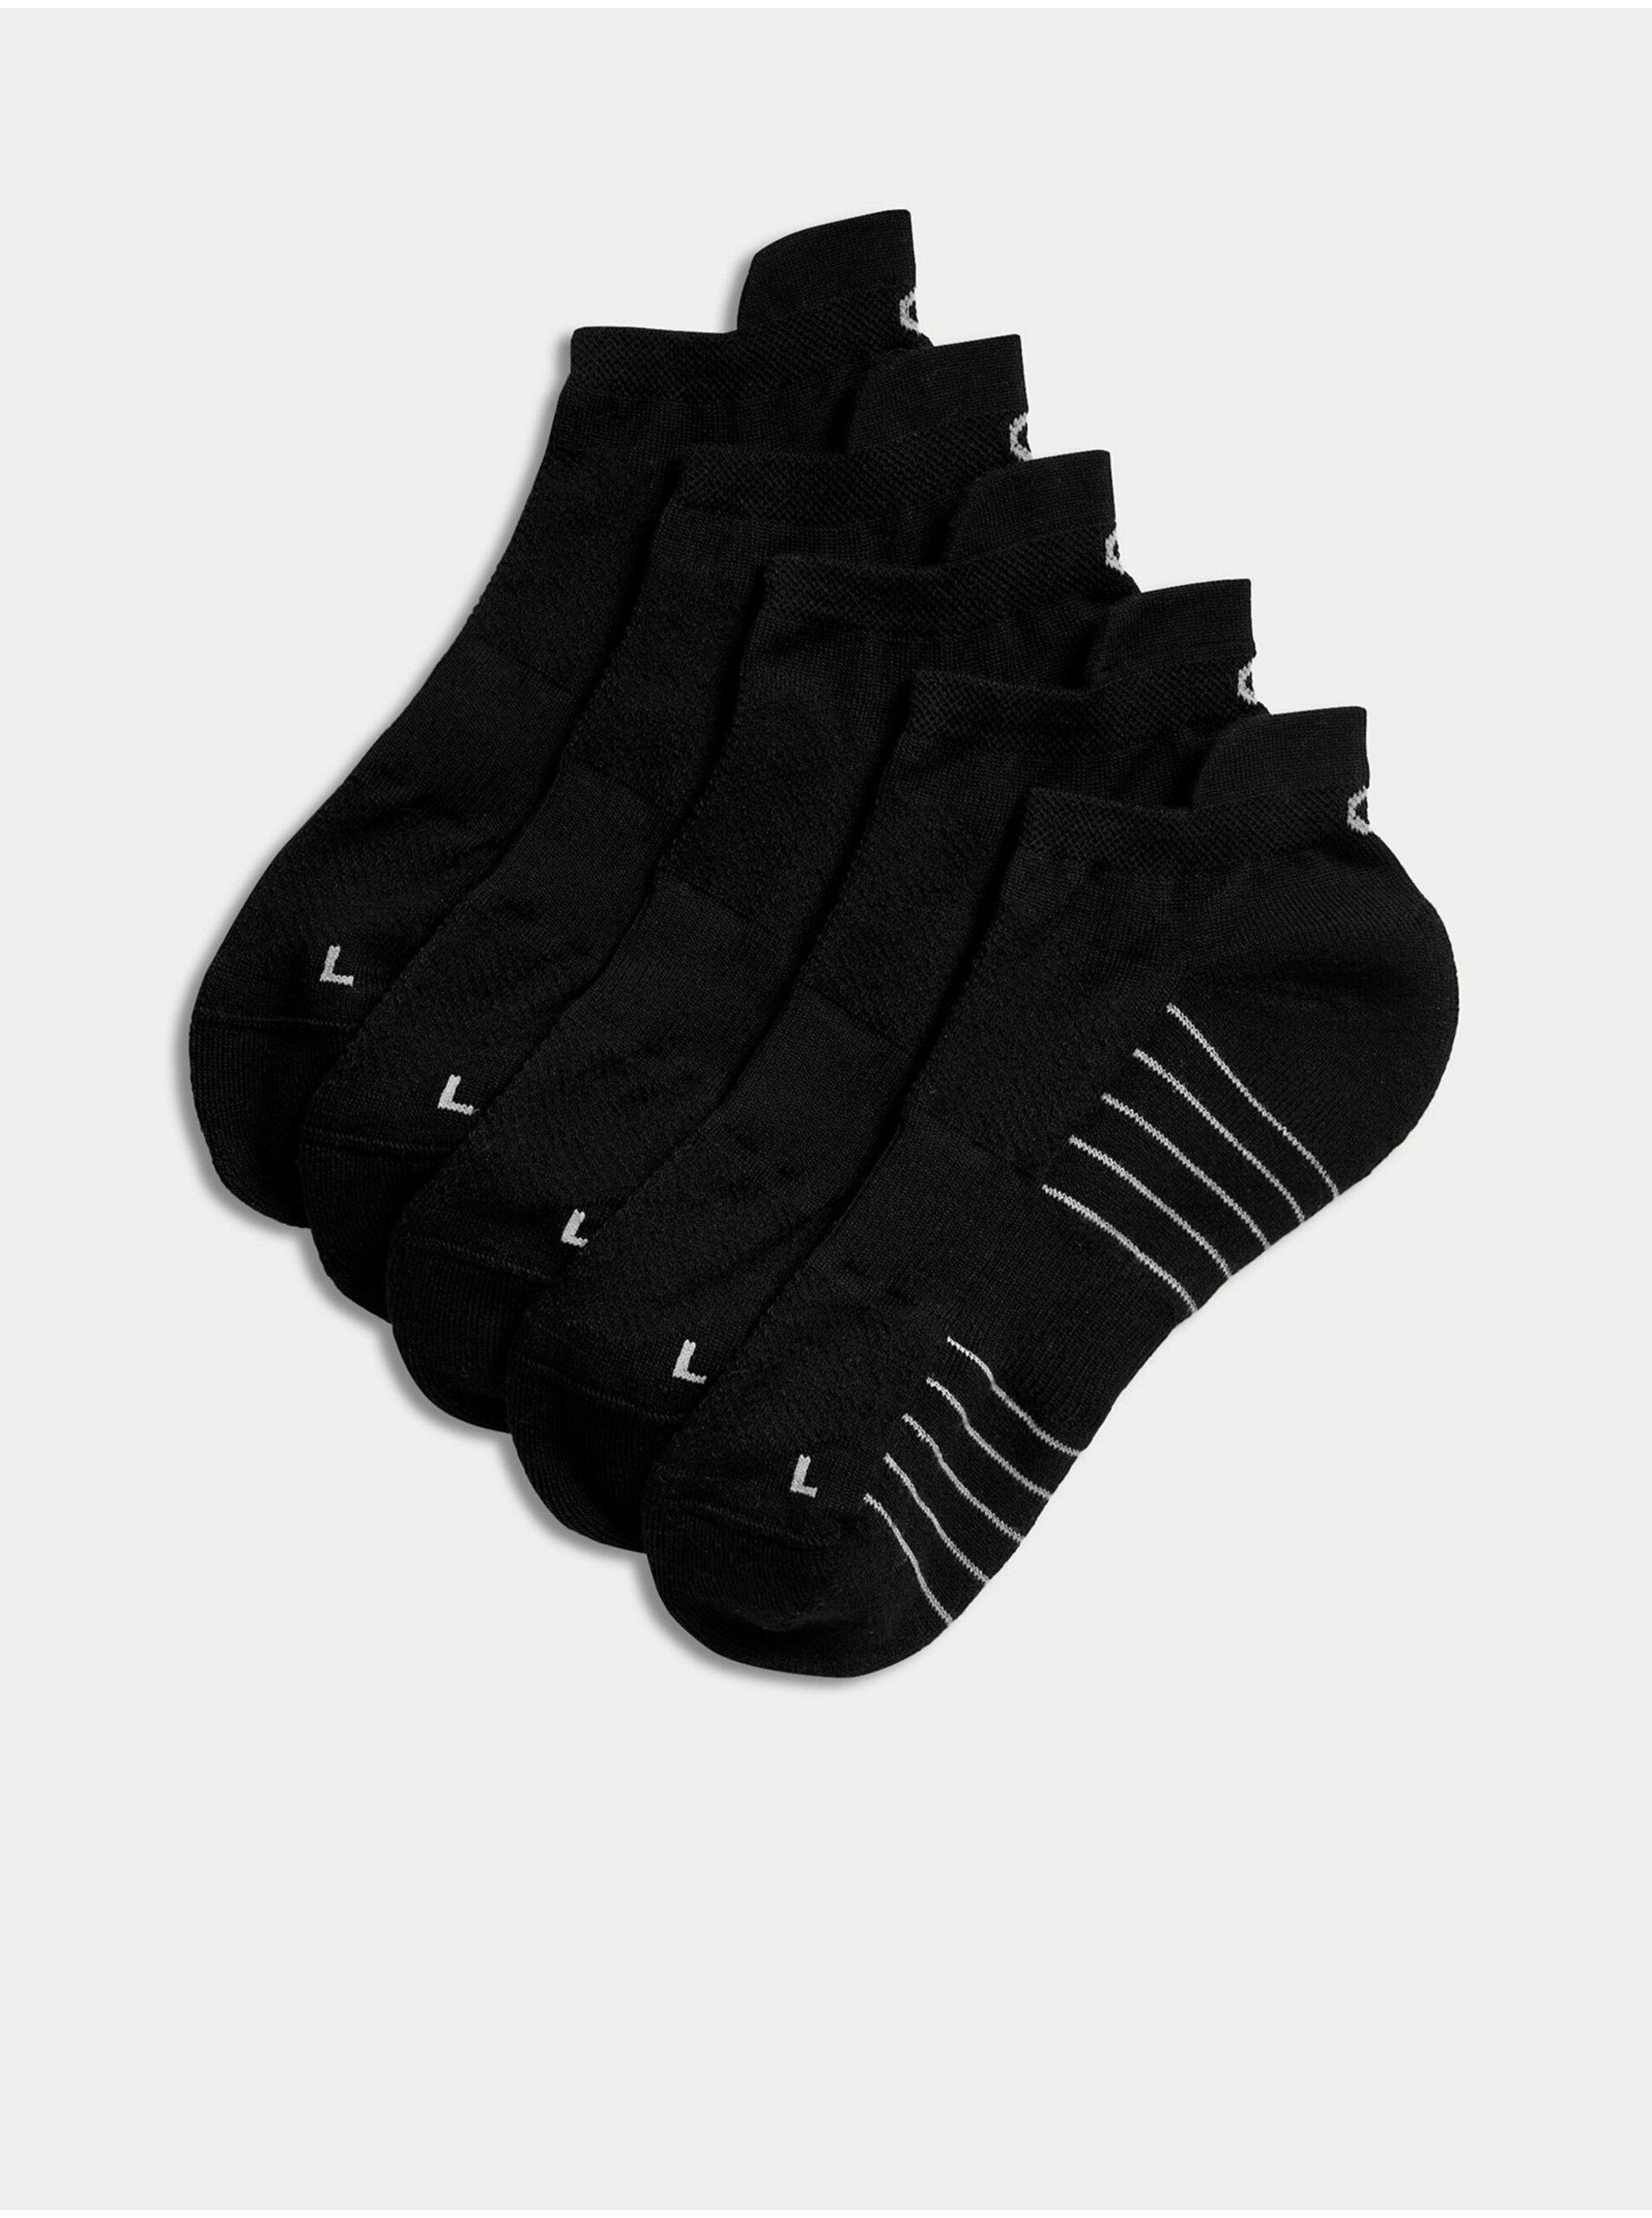 E-shop Sada pěti párů pánských sportovních ponožek v černé barvě Marks & Spencer Trainer Liners™